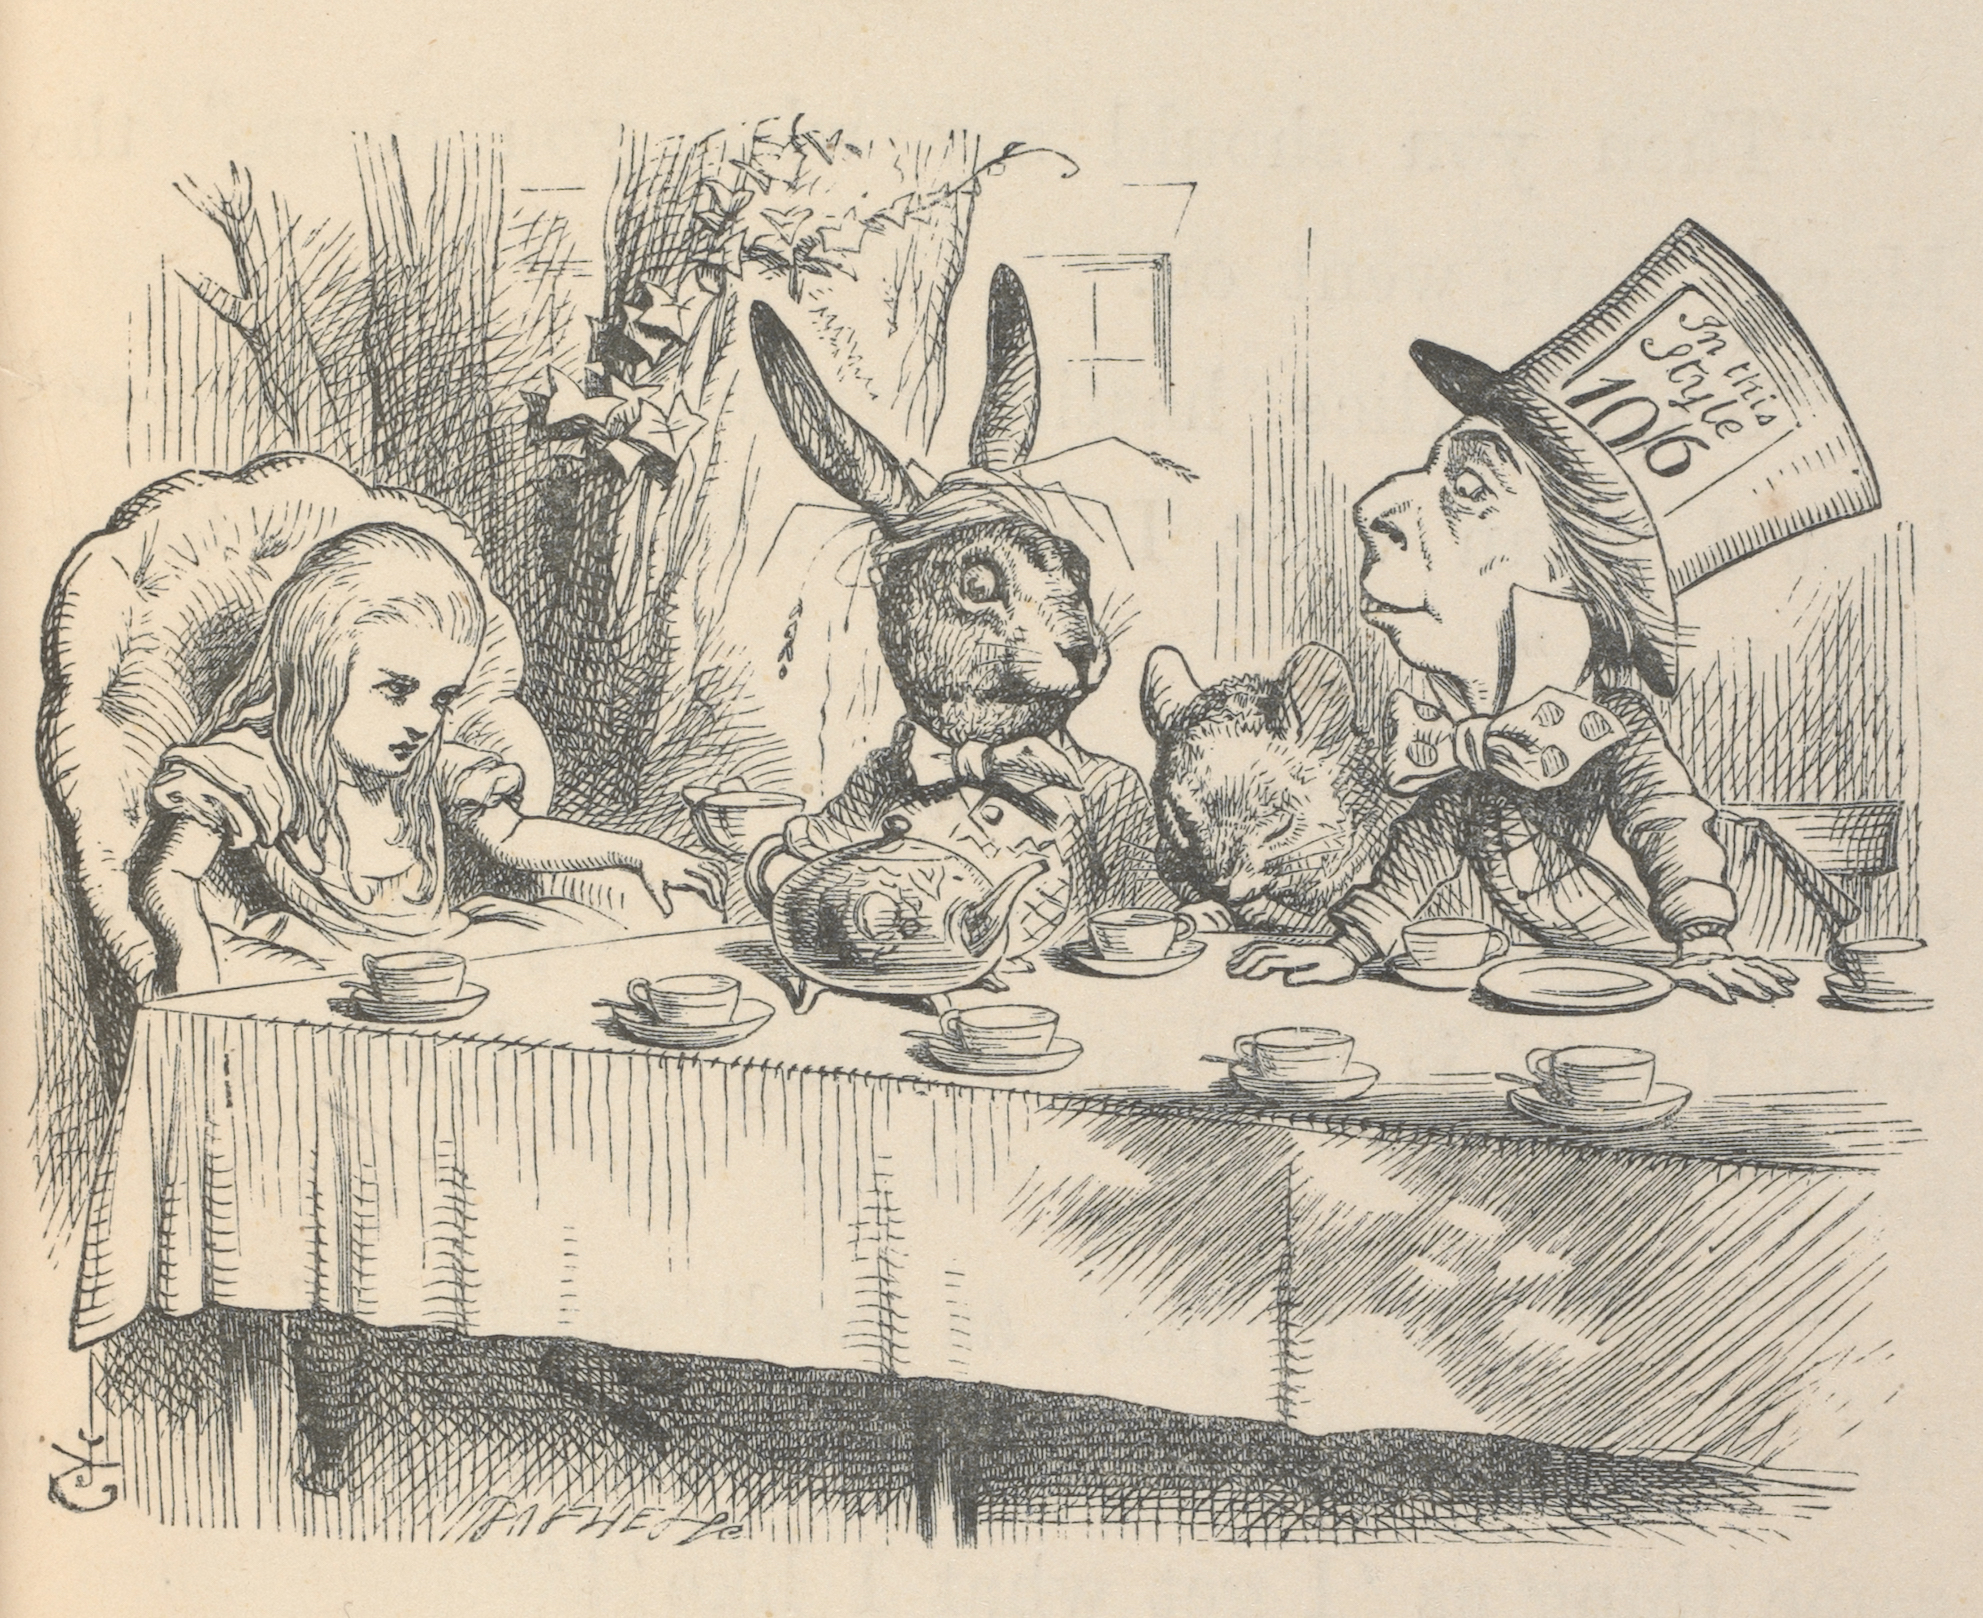 マッド・ハッターのお茶会でのアリス、『不思議の国のアリス』初刊行版本より、ジョン・テニエル画、1866年、 V&A内ナショナル・アート図書館所蔵 (C) Victoria and Albert Museum, London